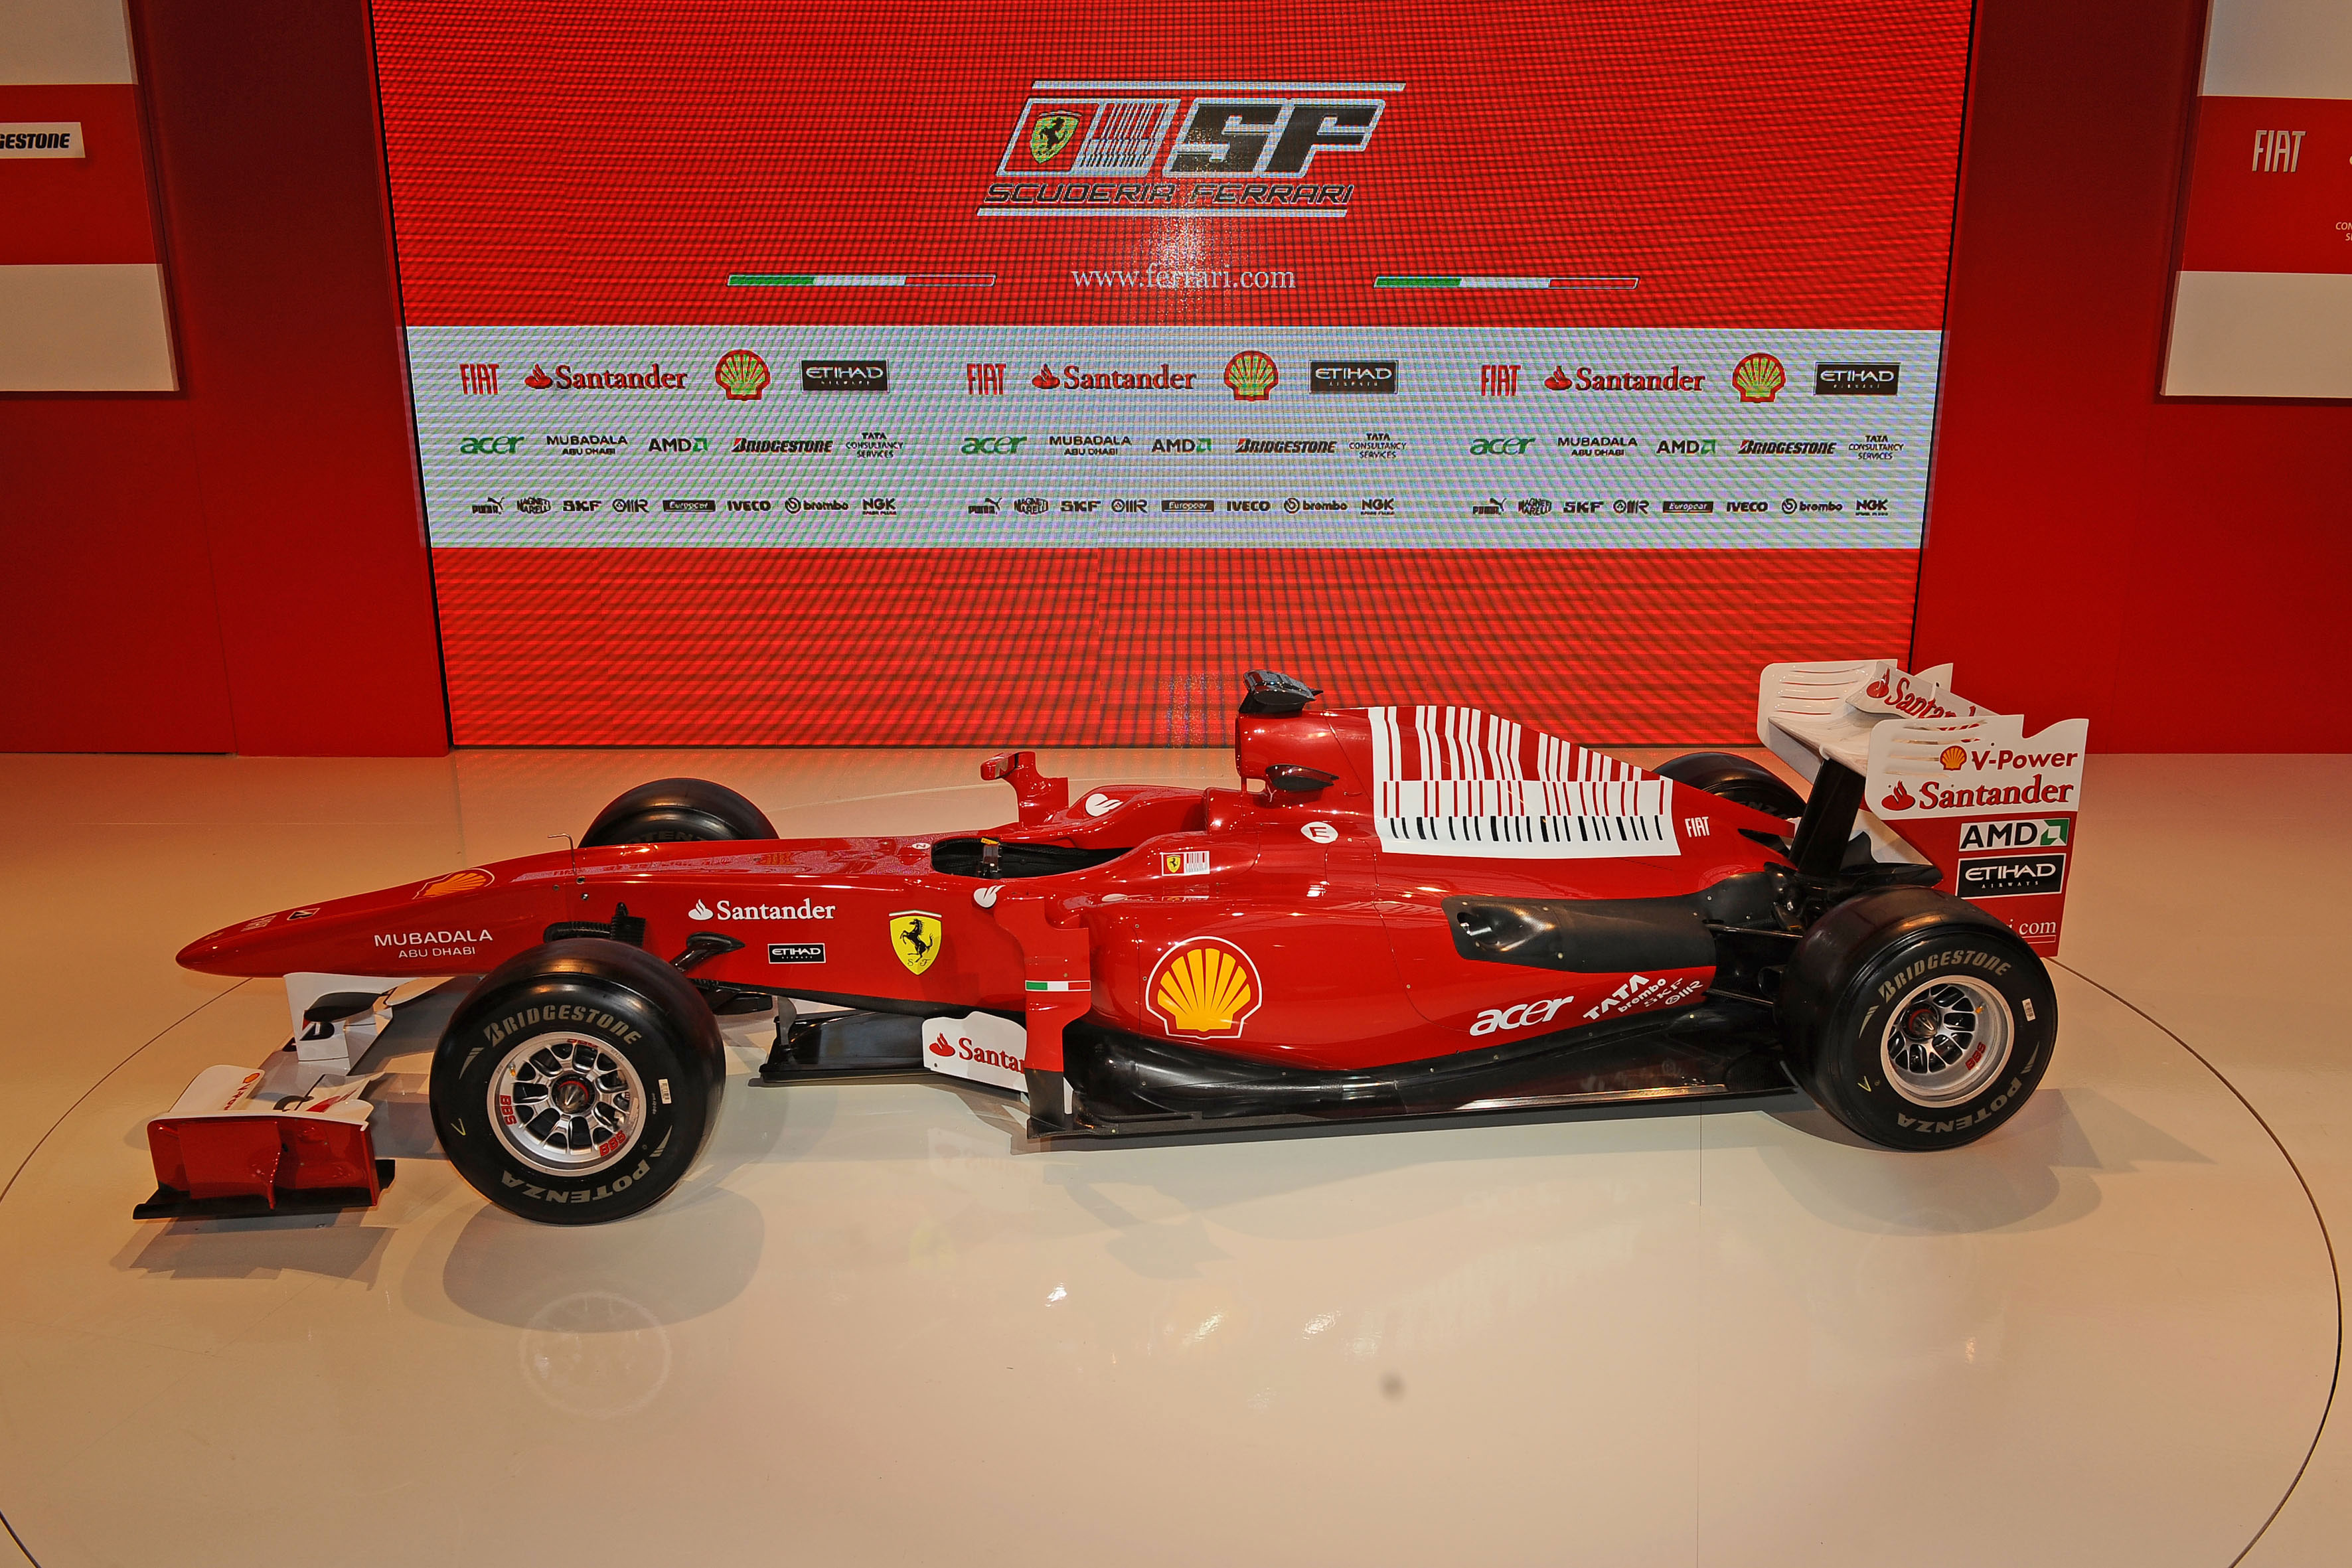 Ferrari F10 sports race car competing in Formula 1